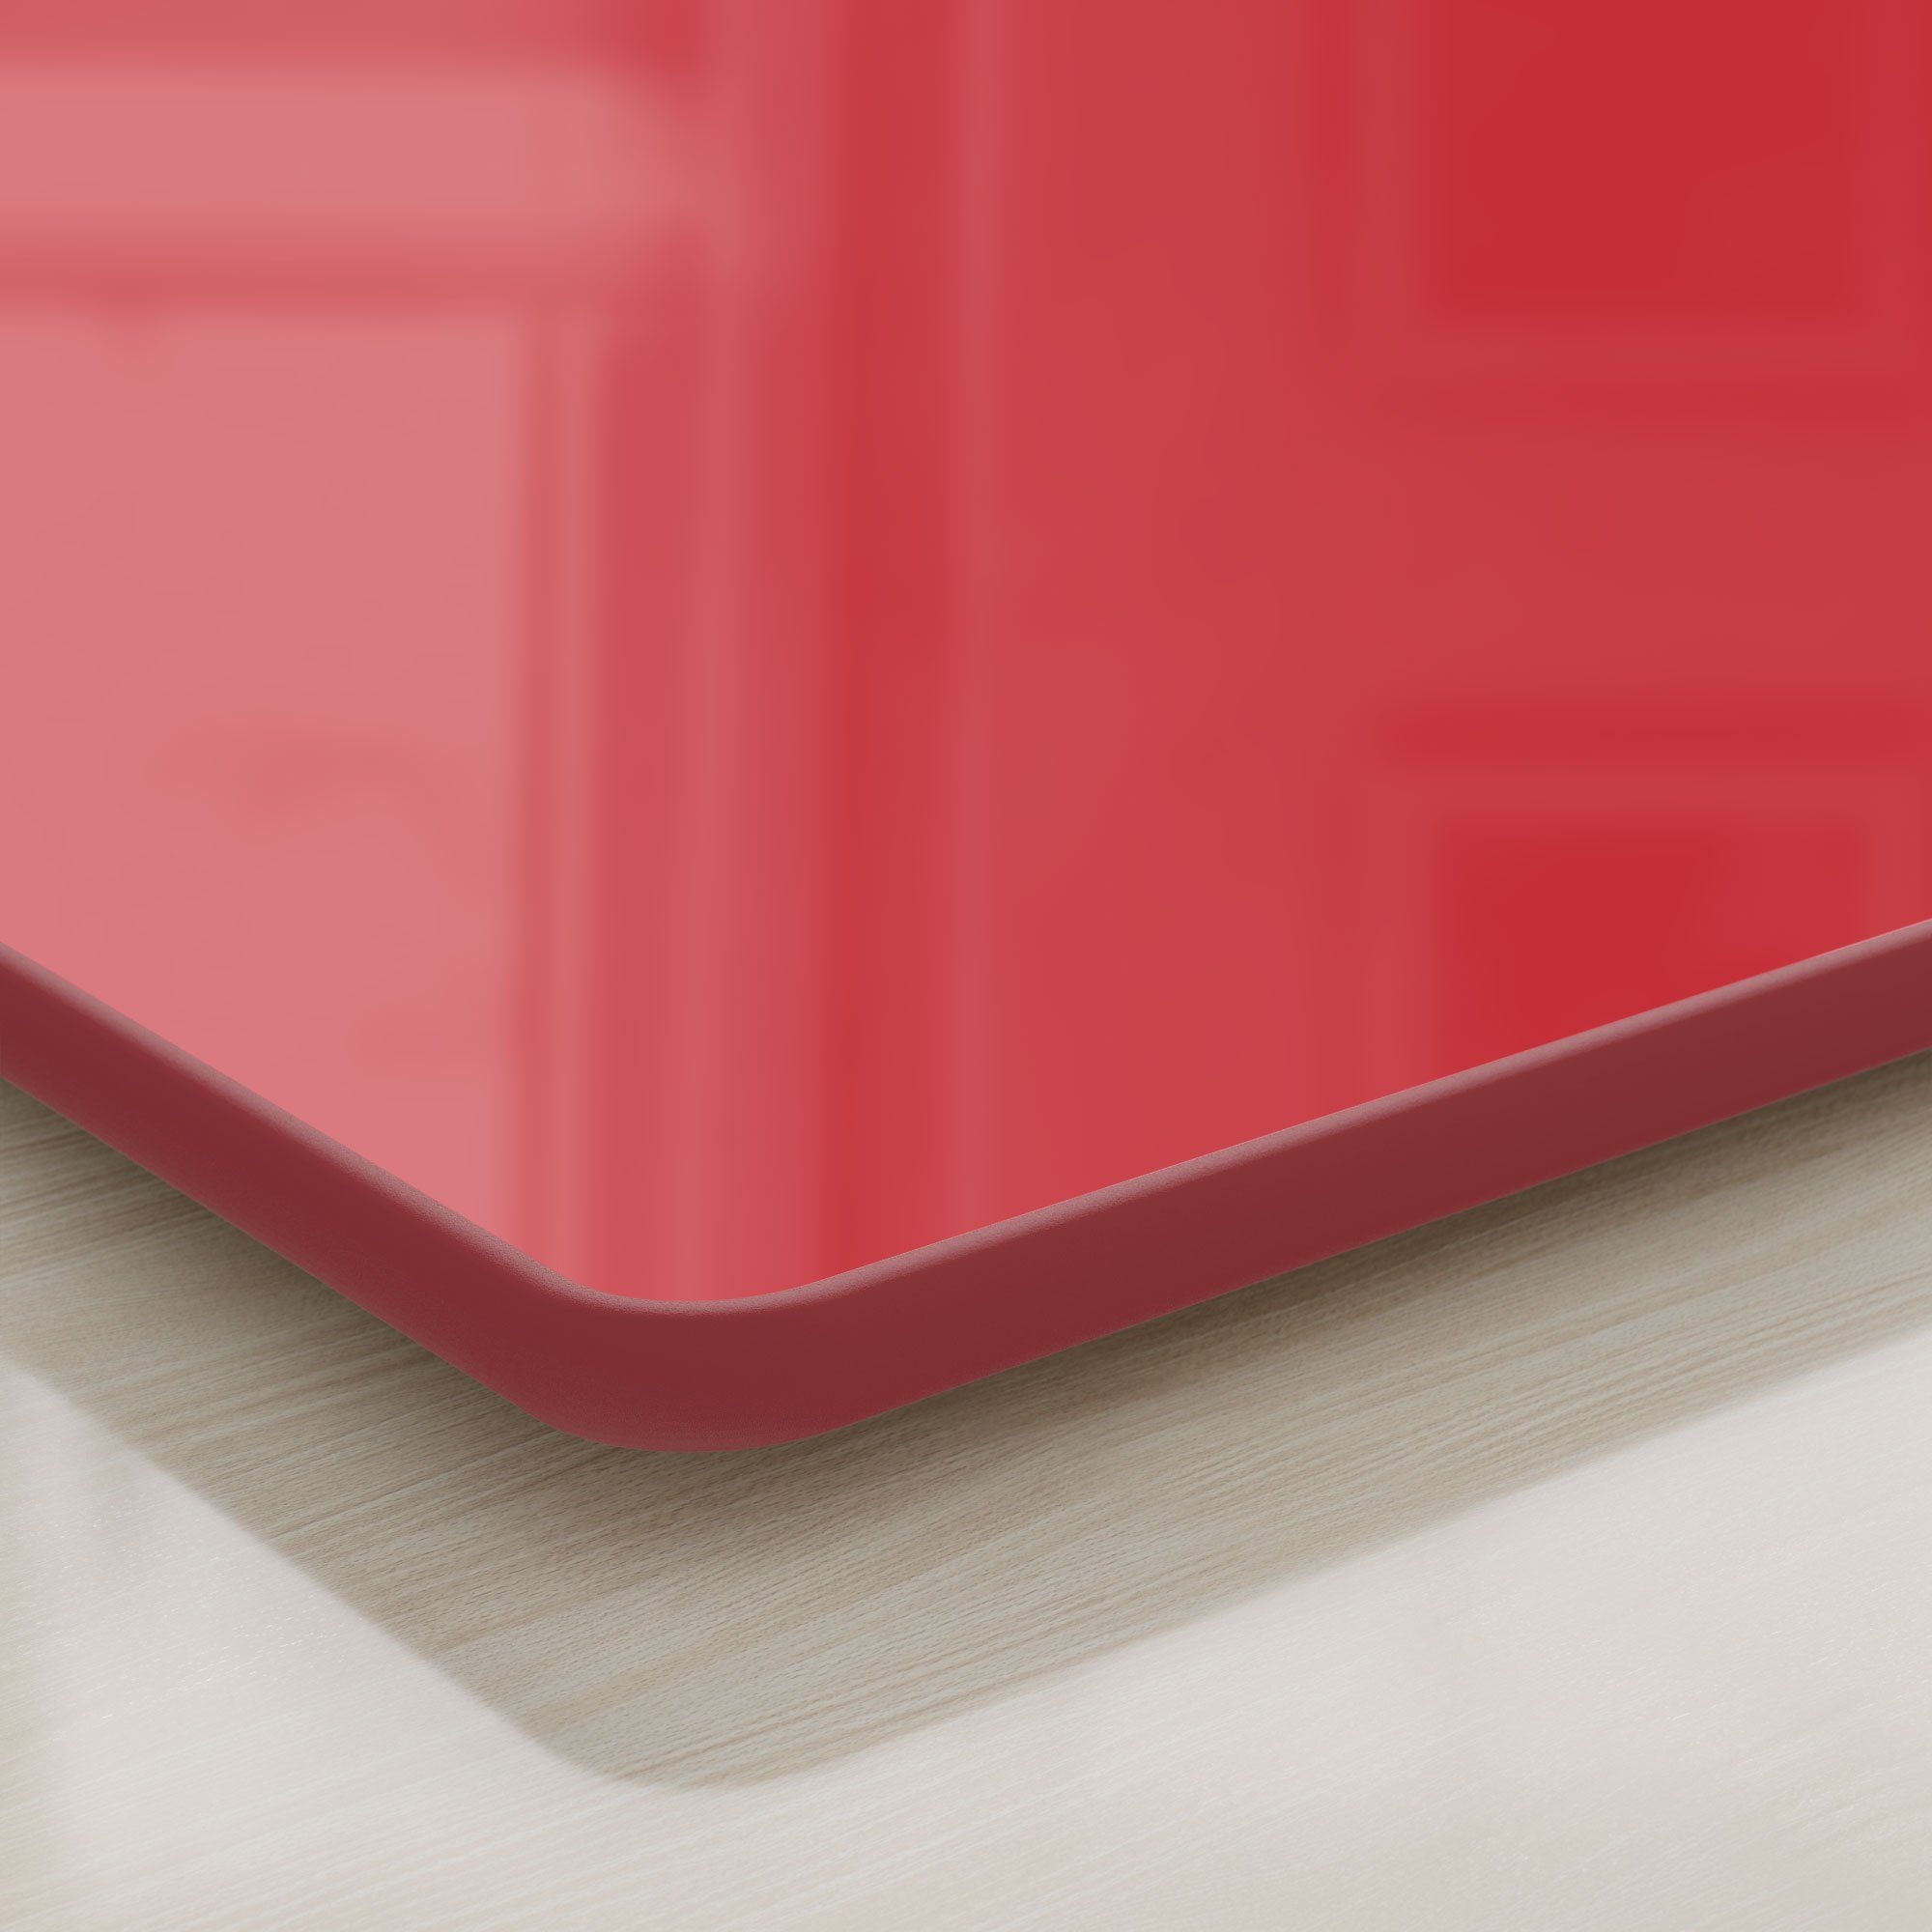 Schneideplatte - Frühstücksbrett Schneidebrett Glas, DEQORI 'Unifarben Rot', Platte